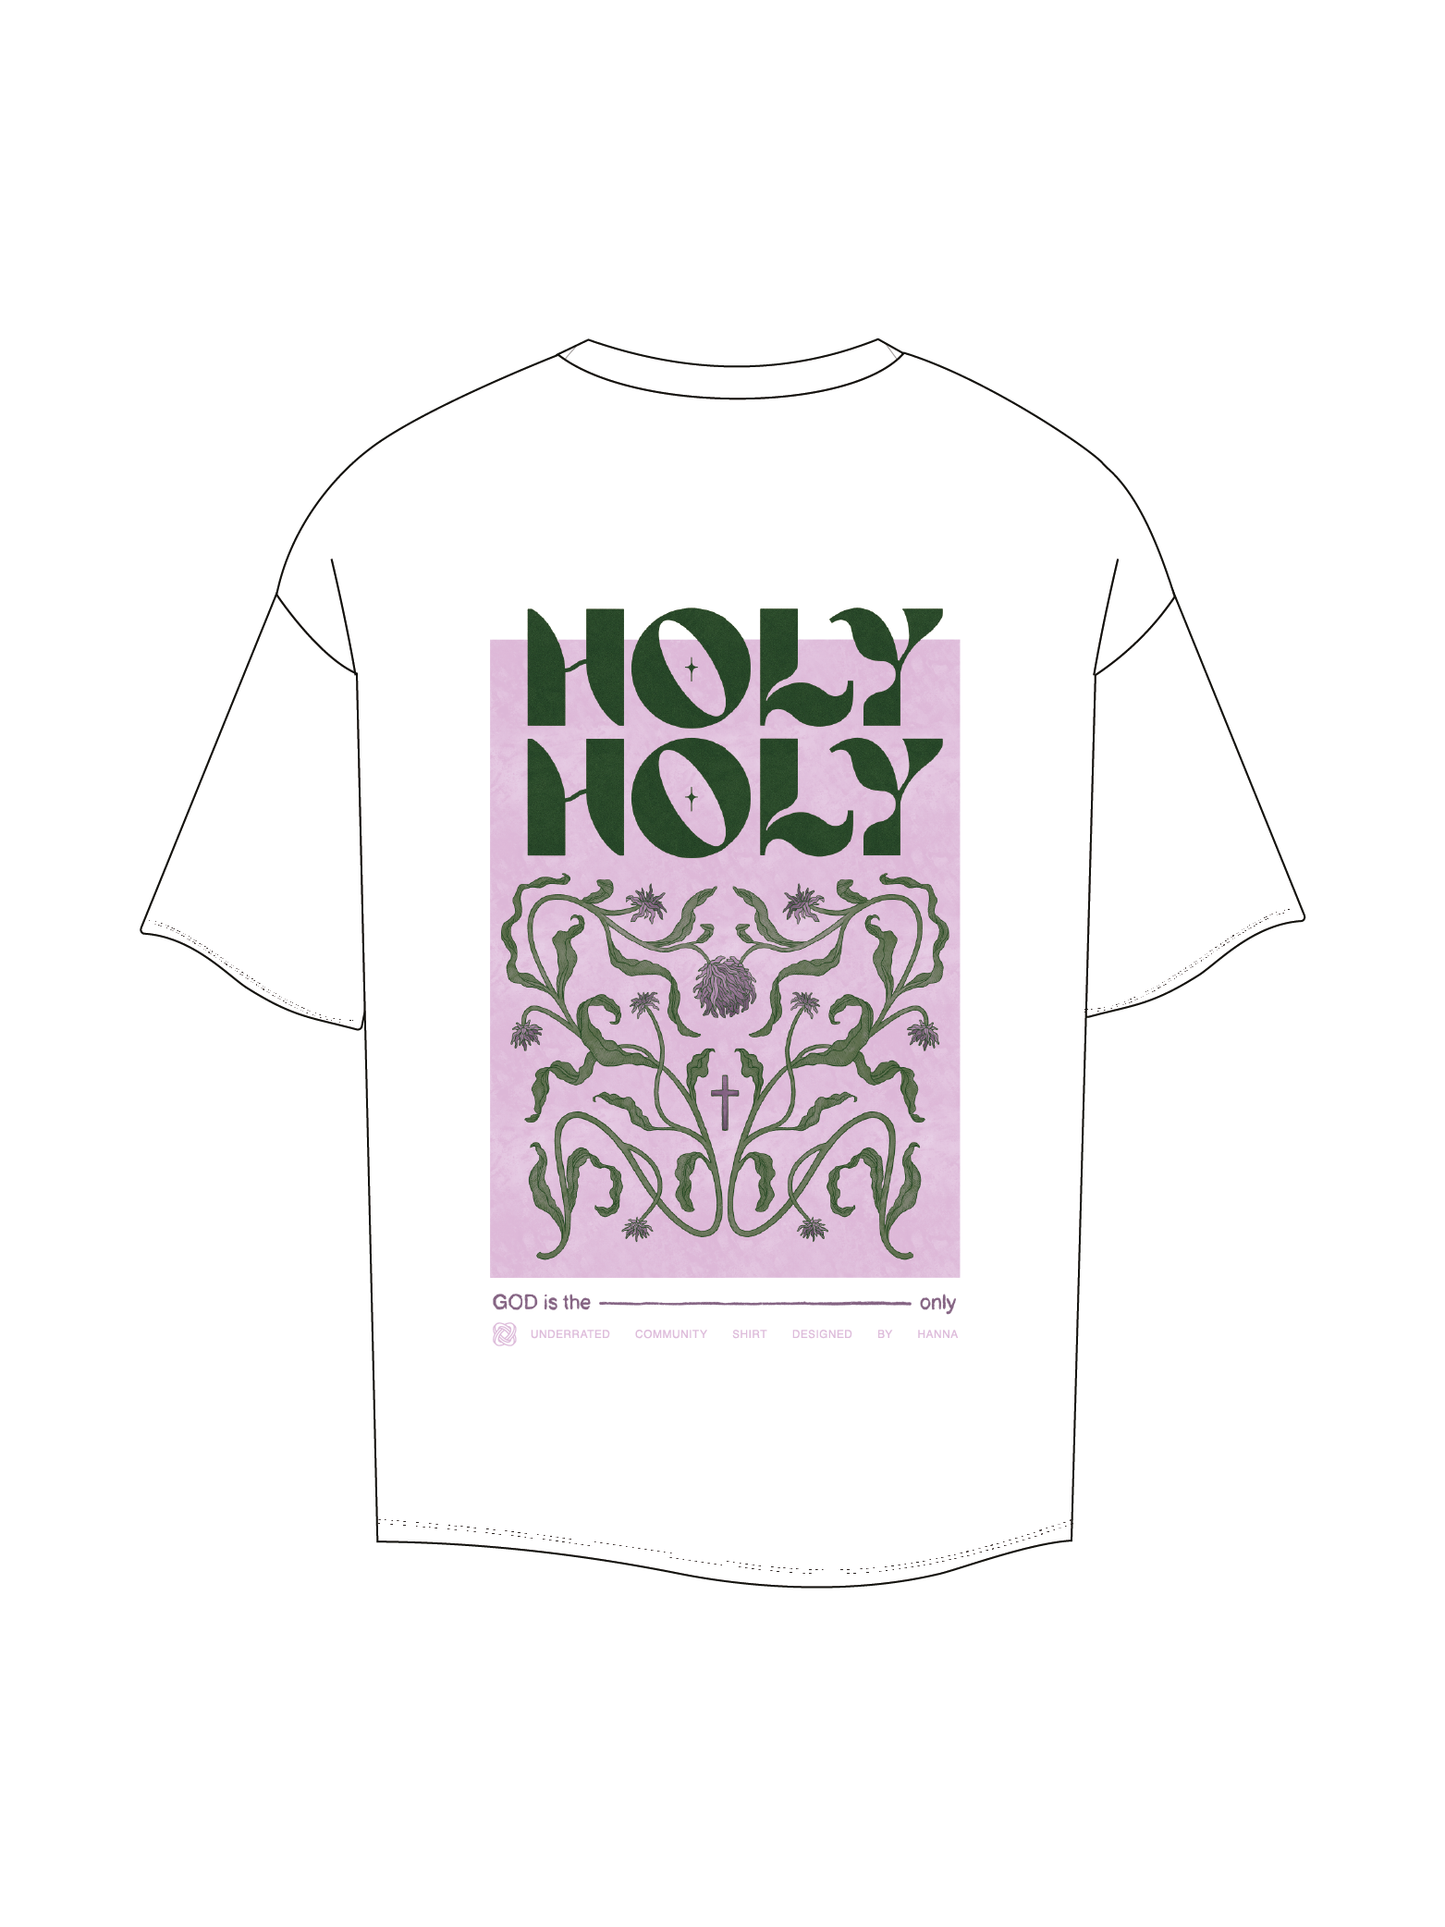 HOLY Shirt (Underrated Bundle)